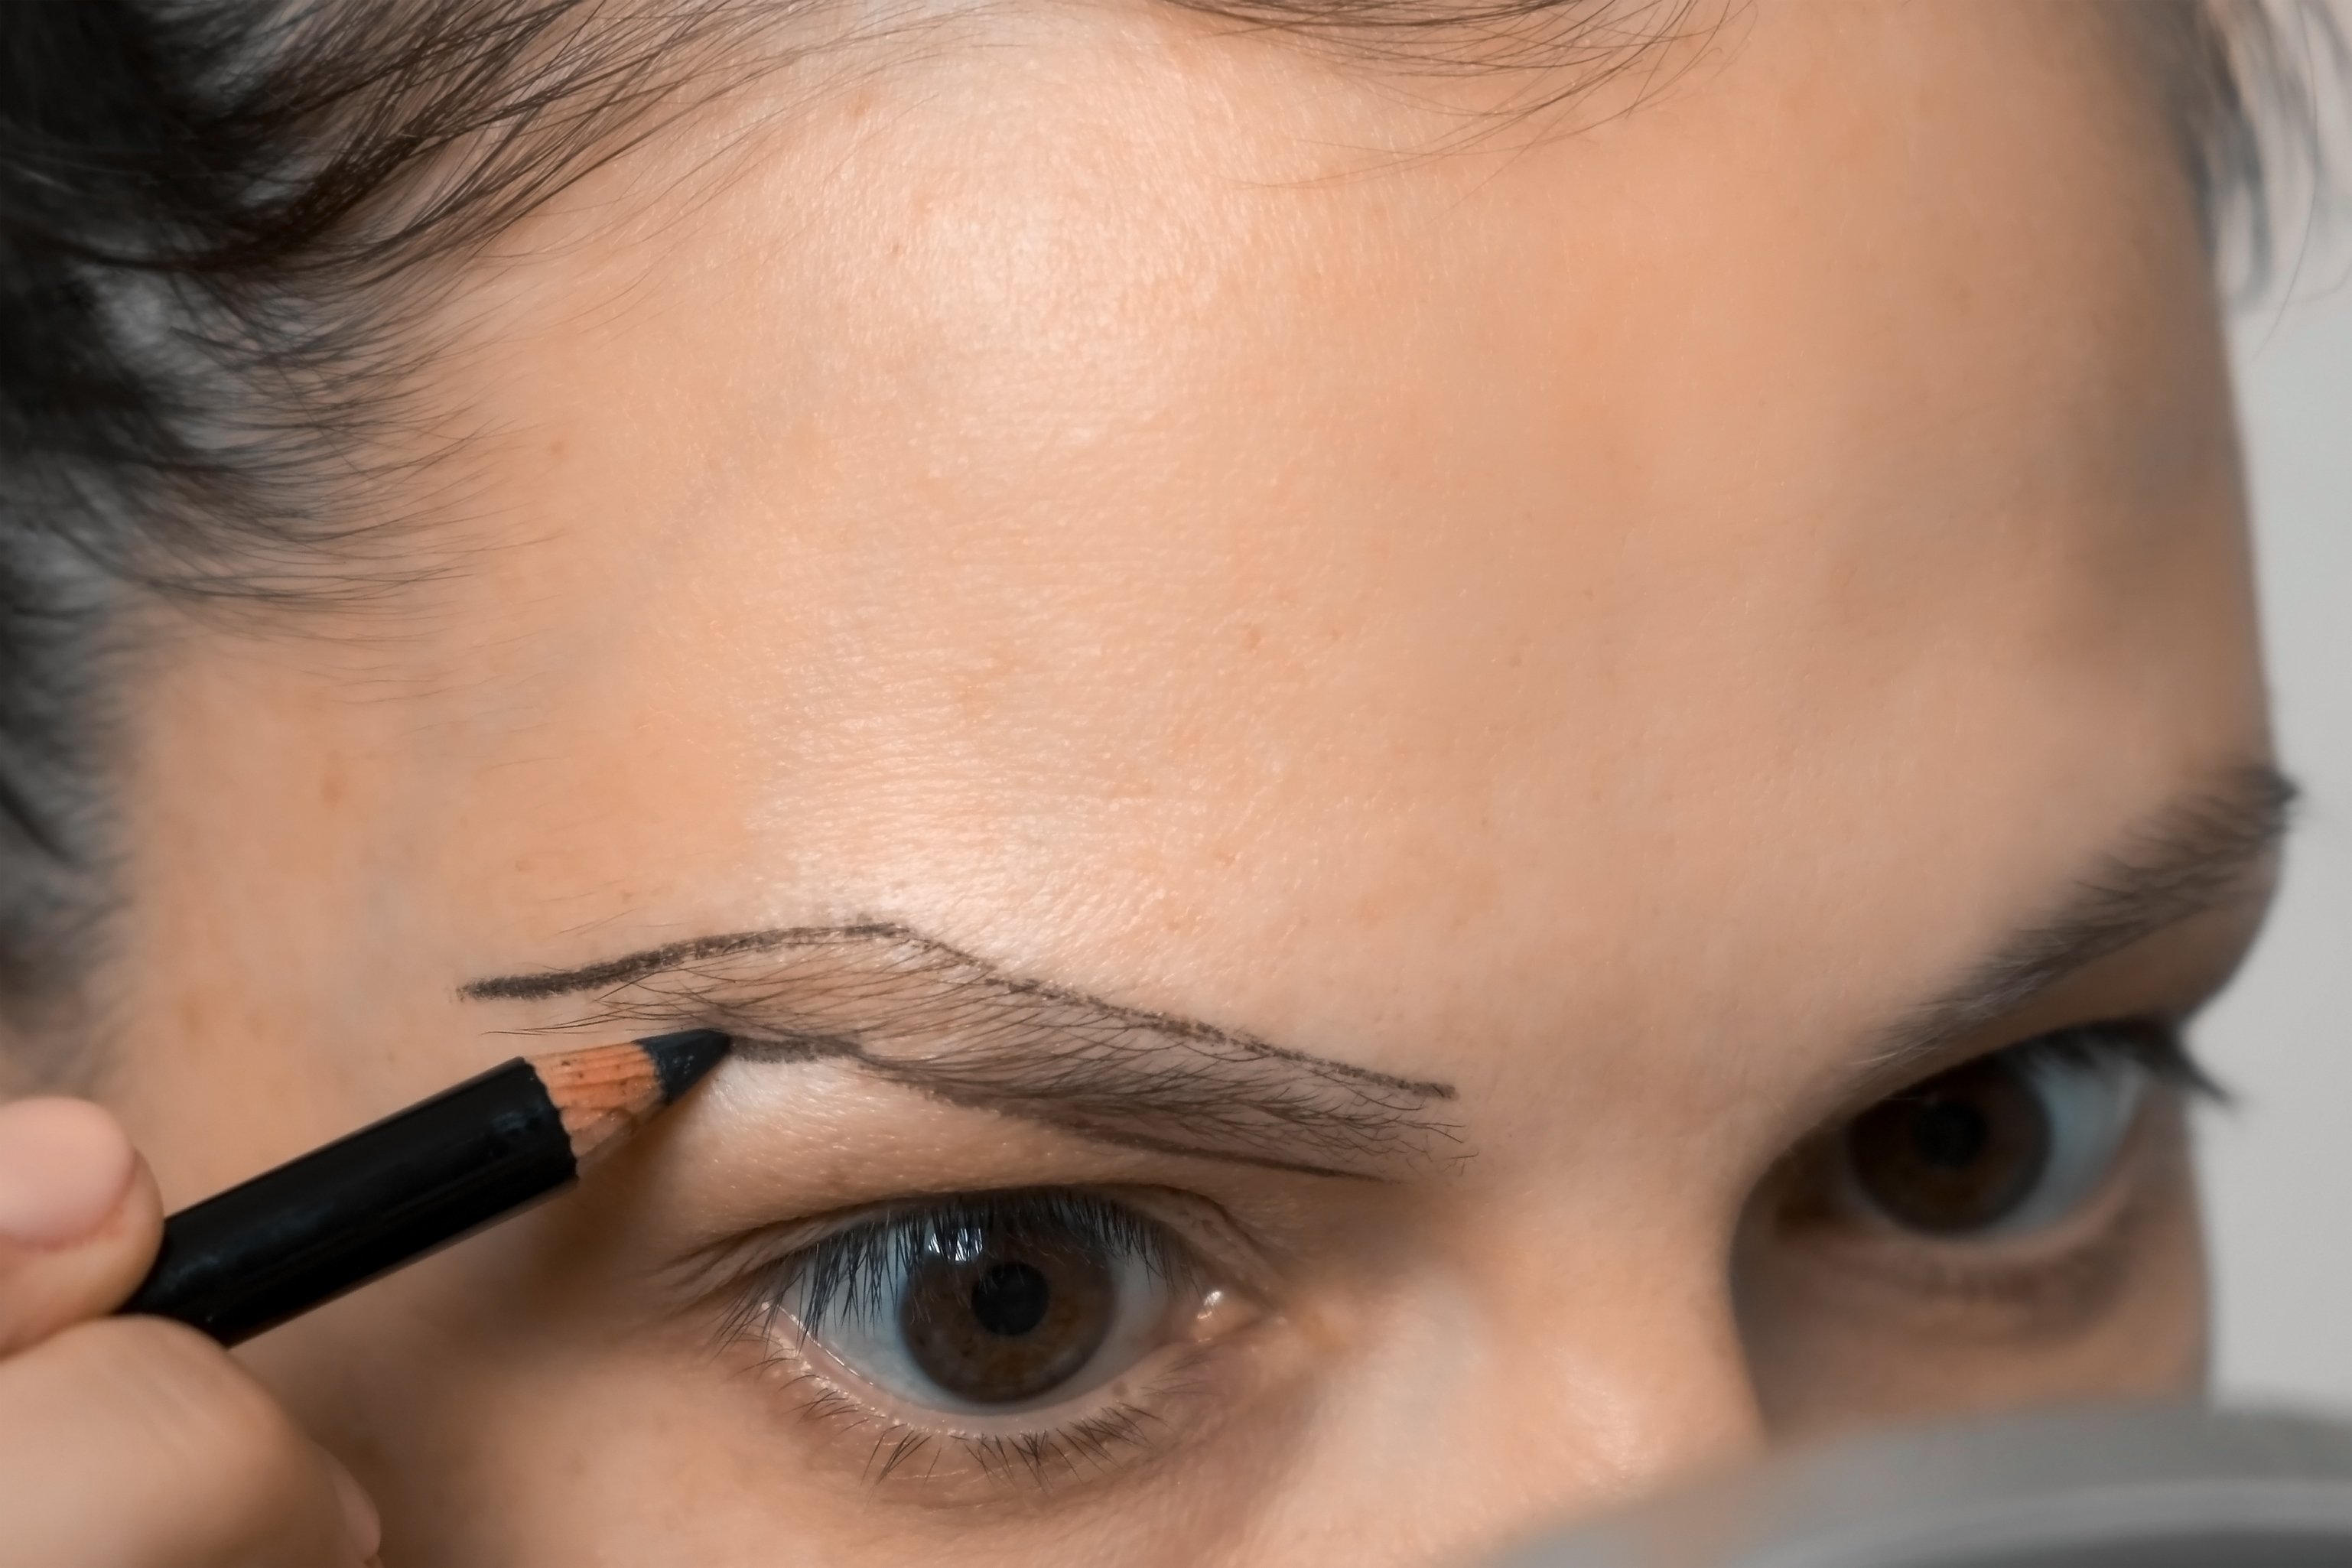 Mujer dibujando el contorno de las cejas usando lápiz antes de pintarlas. | Foto: Shutterstock